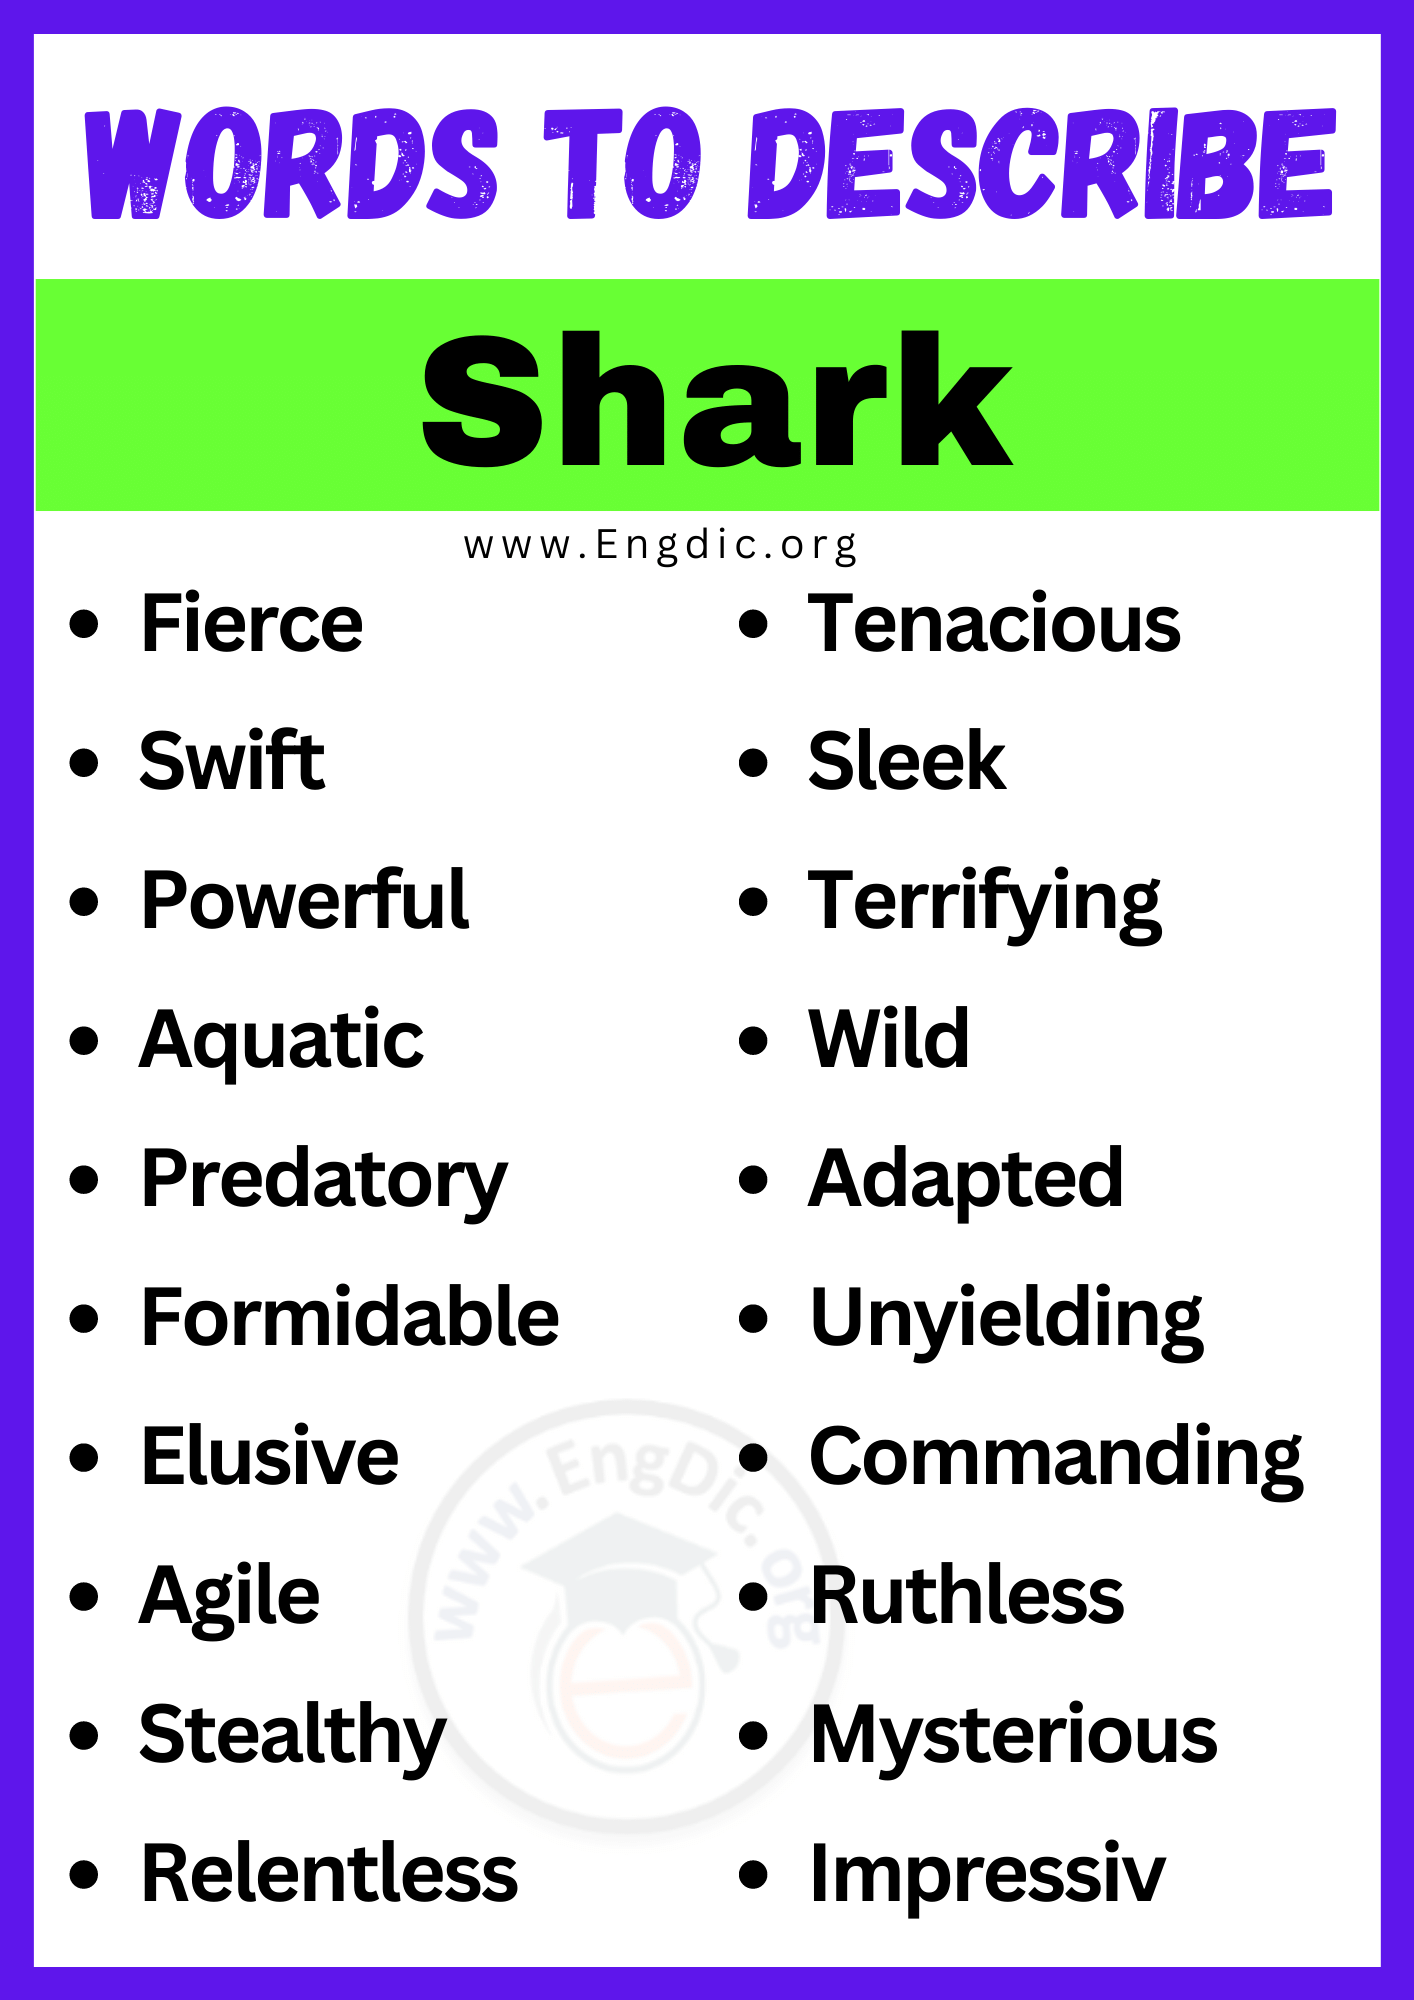 Words to Describe Shark